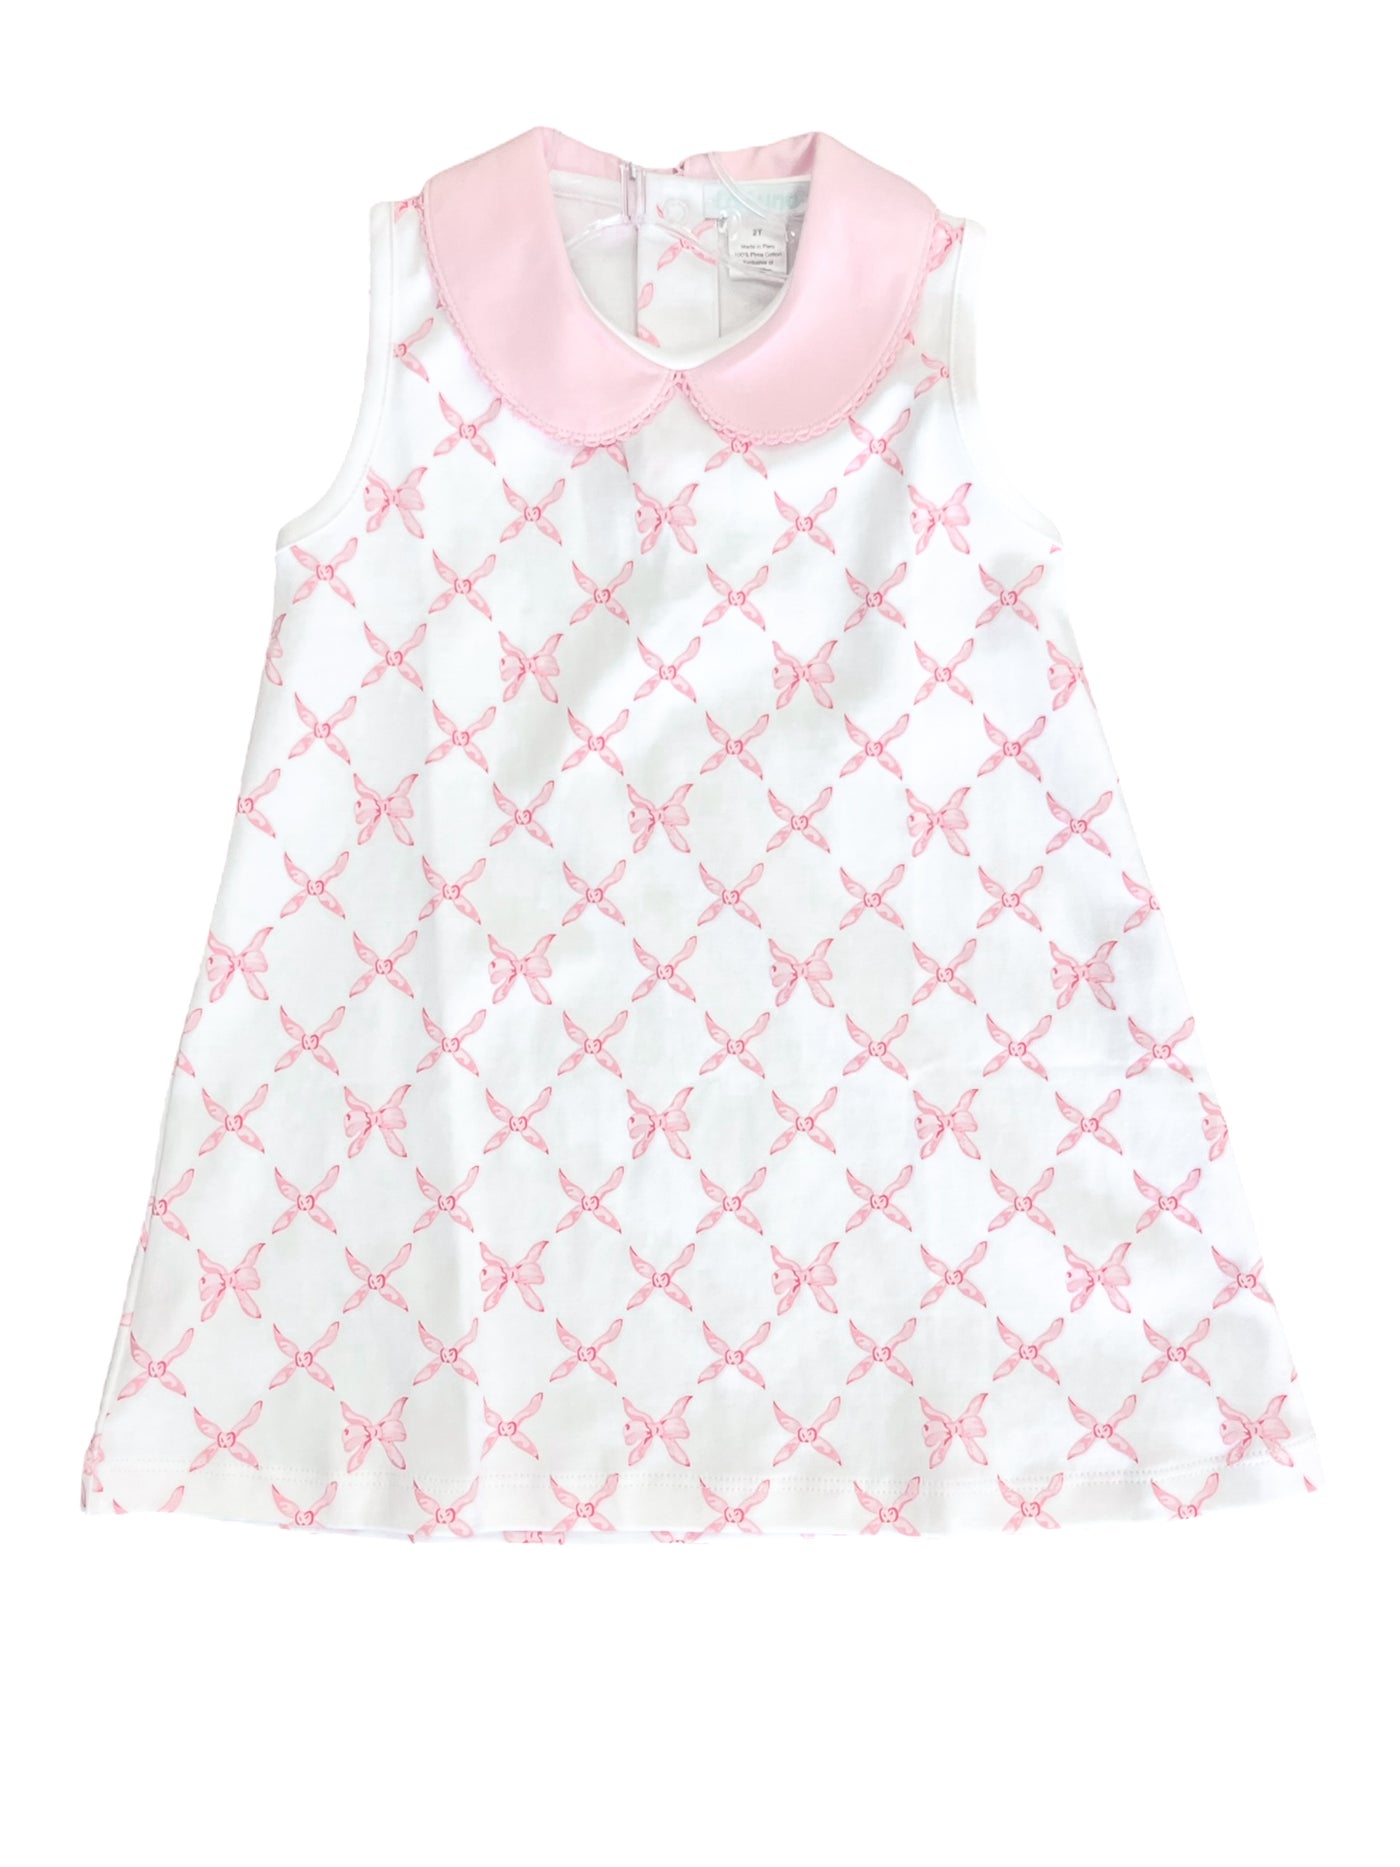 Pink Bows Collection - Dress or Bubble - La Luna